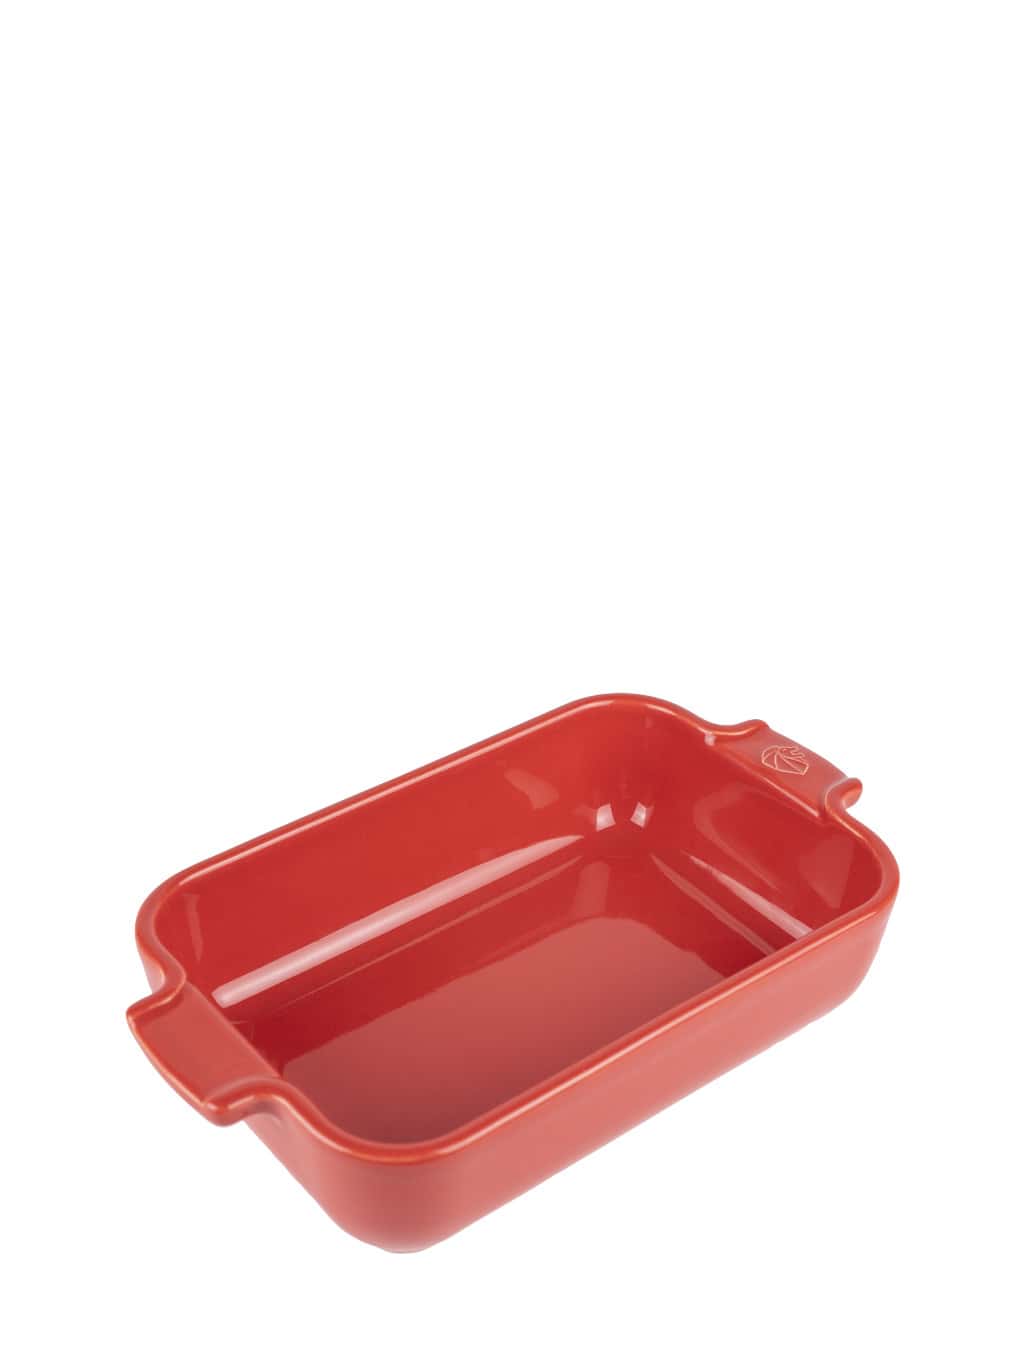 Image of Individual Rectangular Ceramic Oven Dish in Red, 22cm Appolia